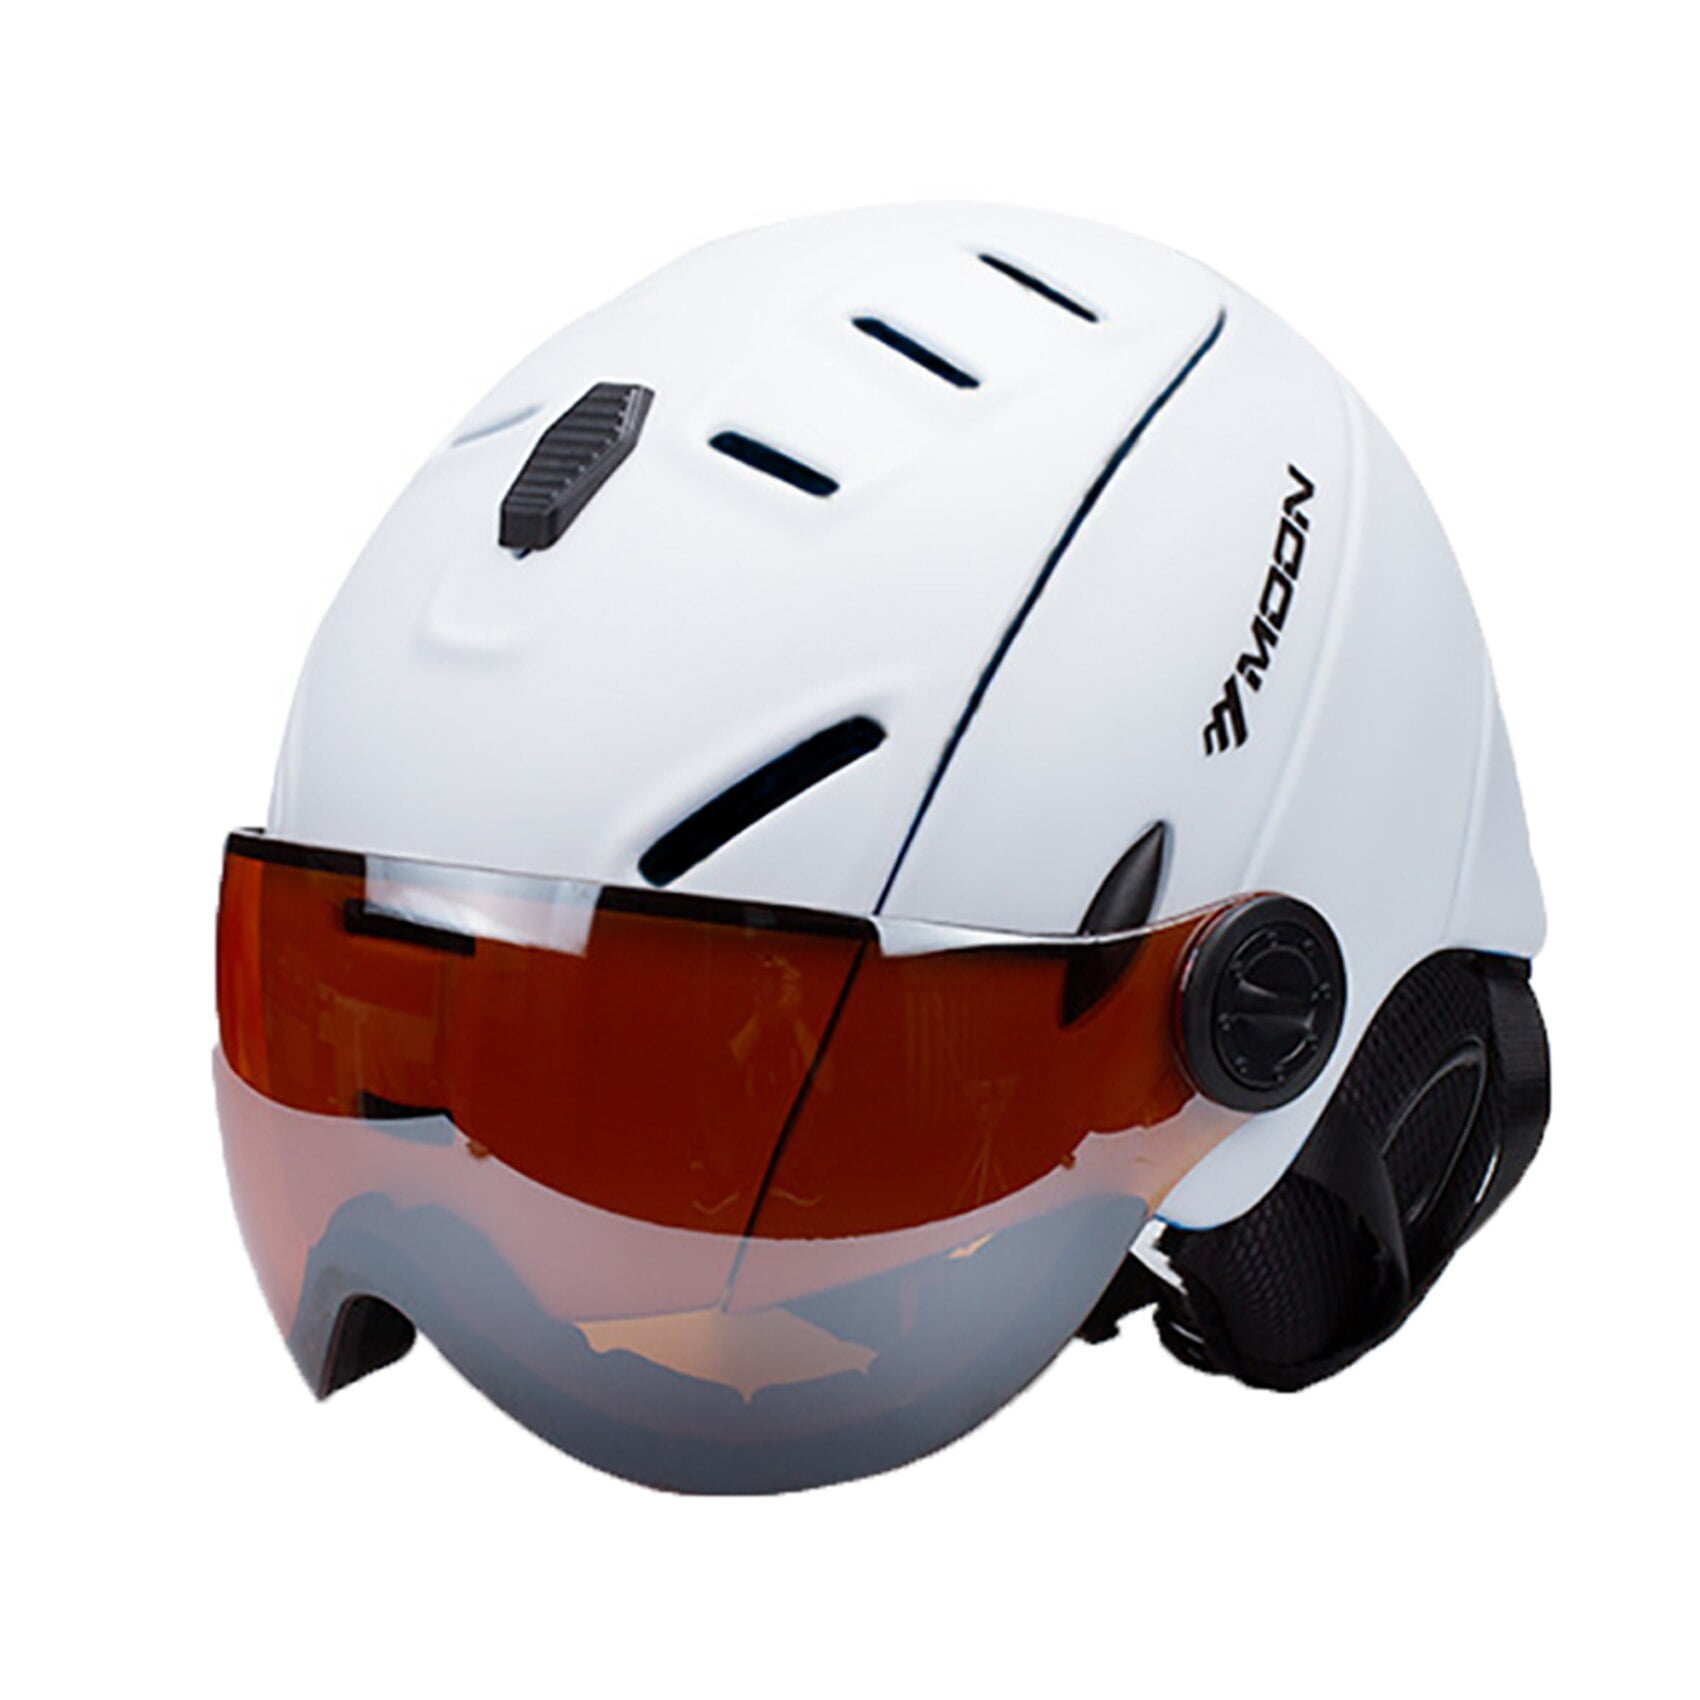 Odoland Ski Helmet with Ski Goggles, Light Weight Snowboard Helmet and  2-in-1 Visor Detachable Goggles Set, Snow Sport Helmets for Men Women